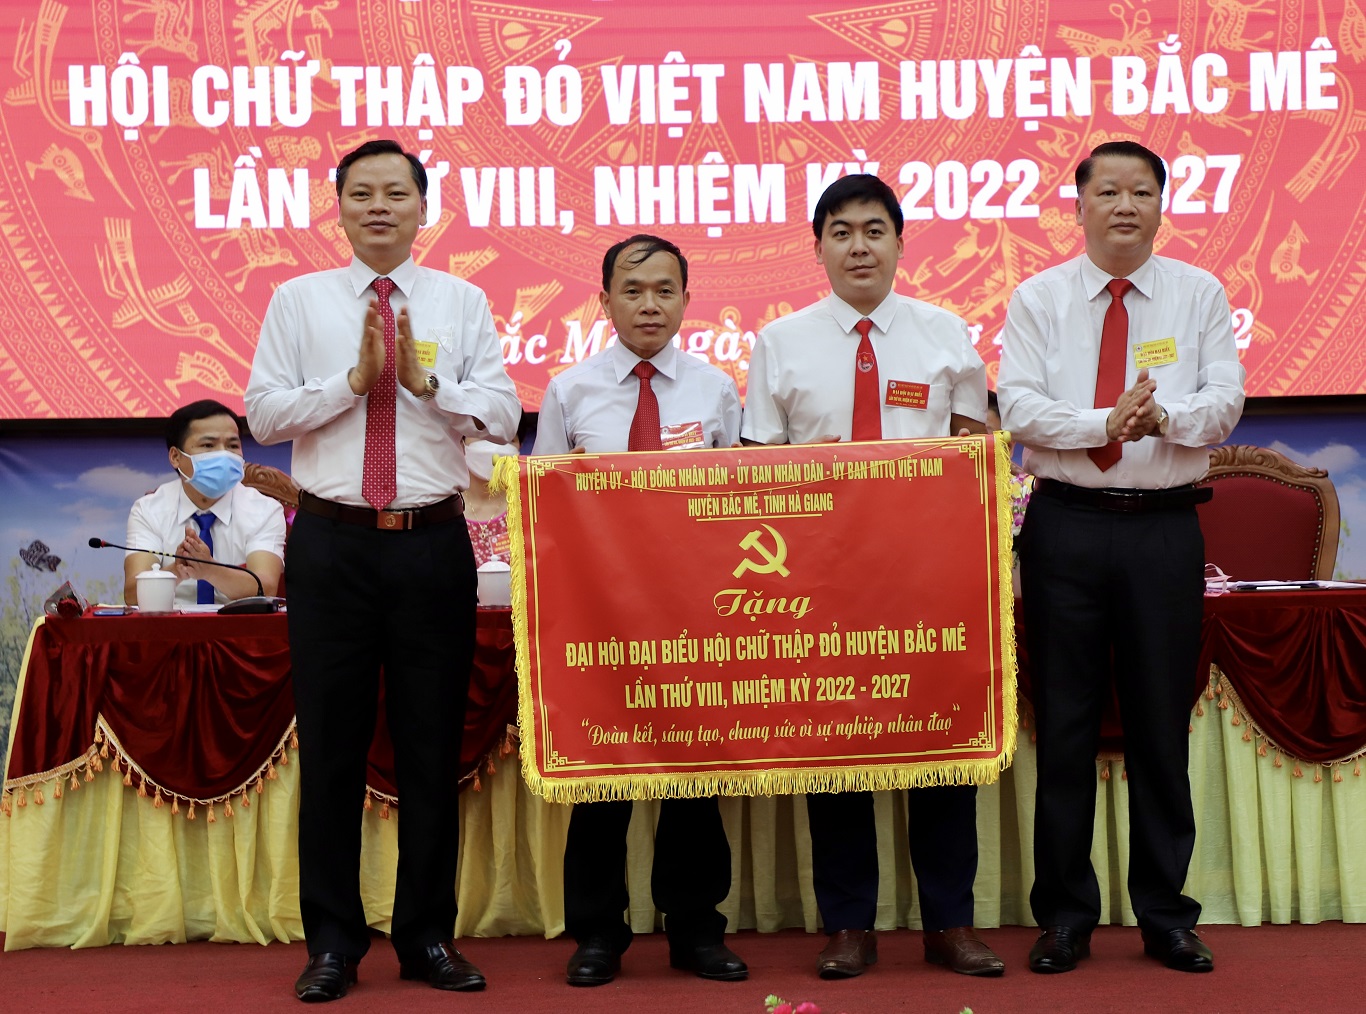 Đại hội đại biểu Hội Chữ thập đỏ huyện Bắc Mê lần thứ VIII nhiệm kỳ 2022 - 2027